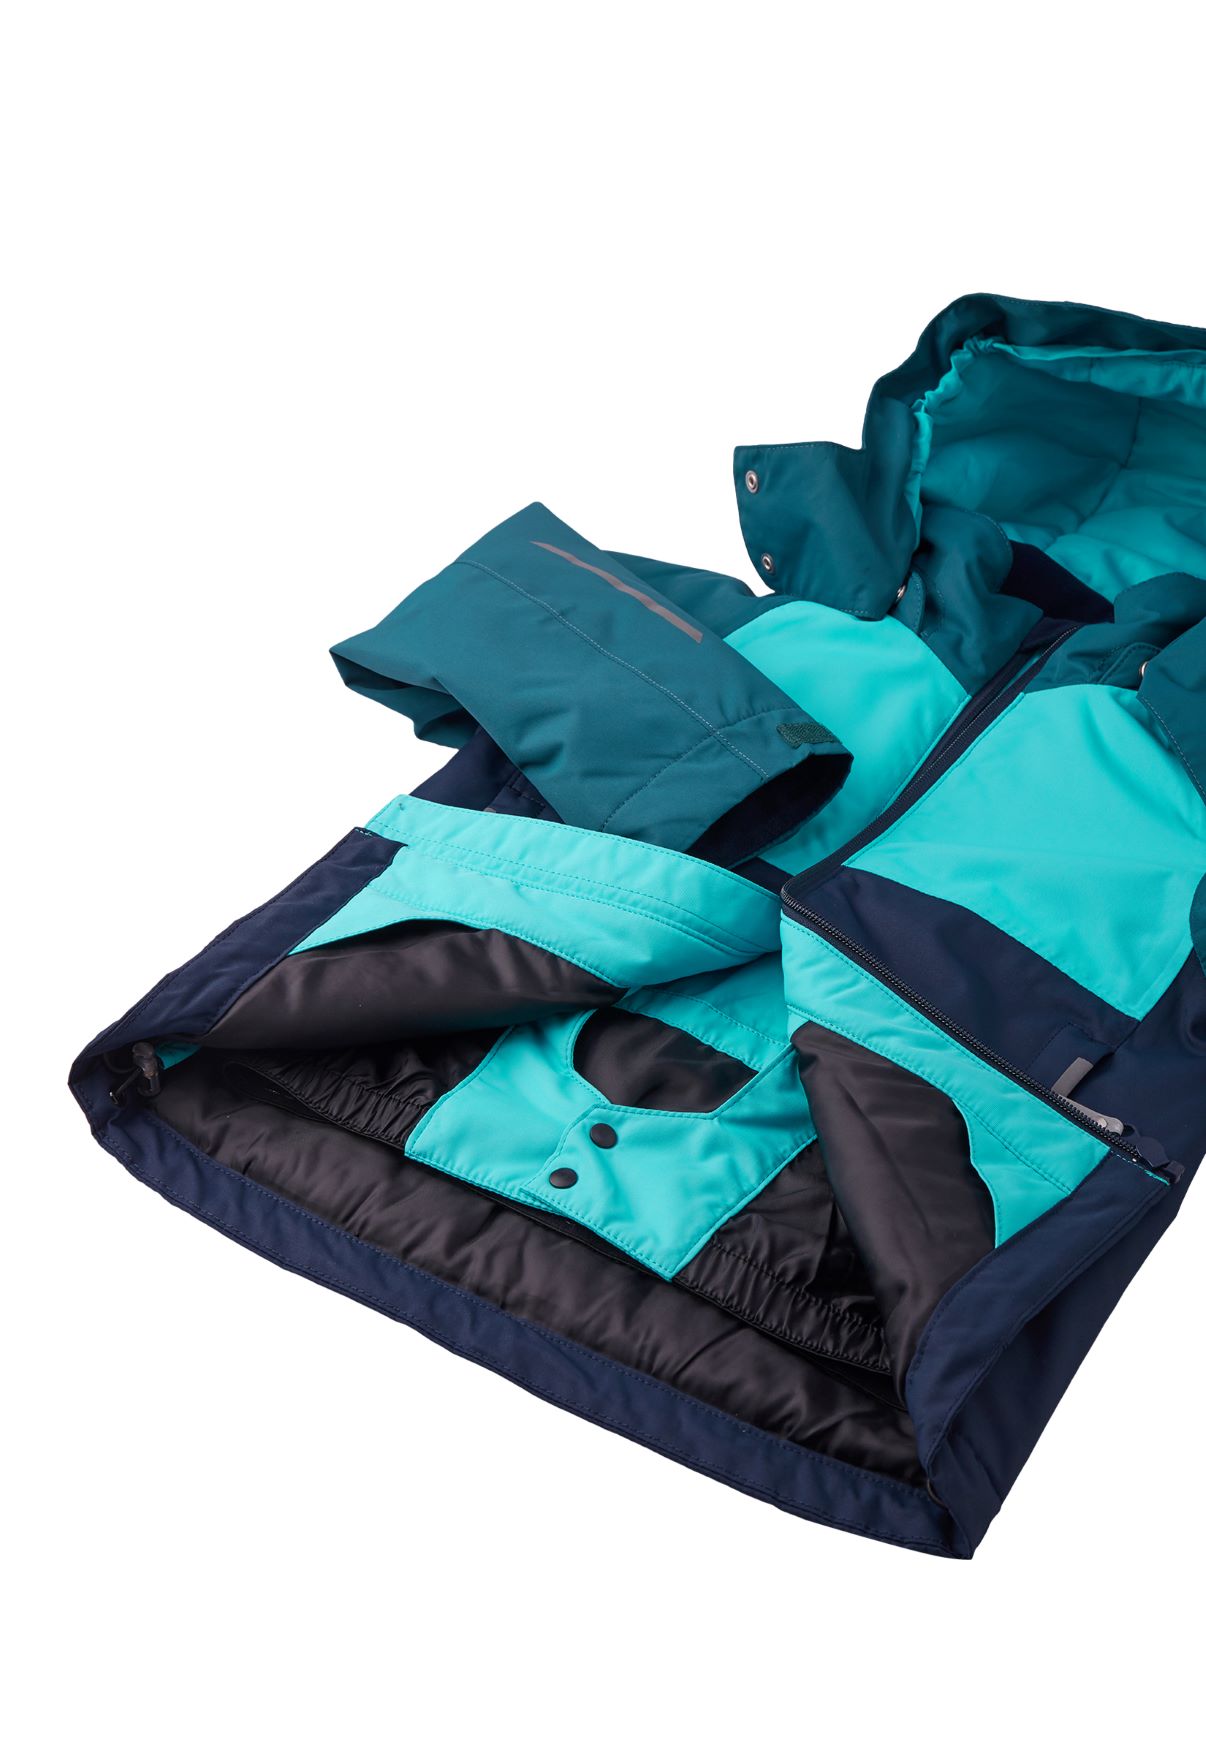 521657-6980 Reima Karkkila - Navy zimna chlapcenska lyziarska bunda modra